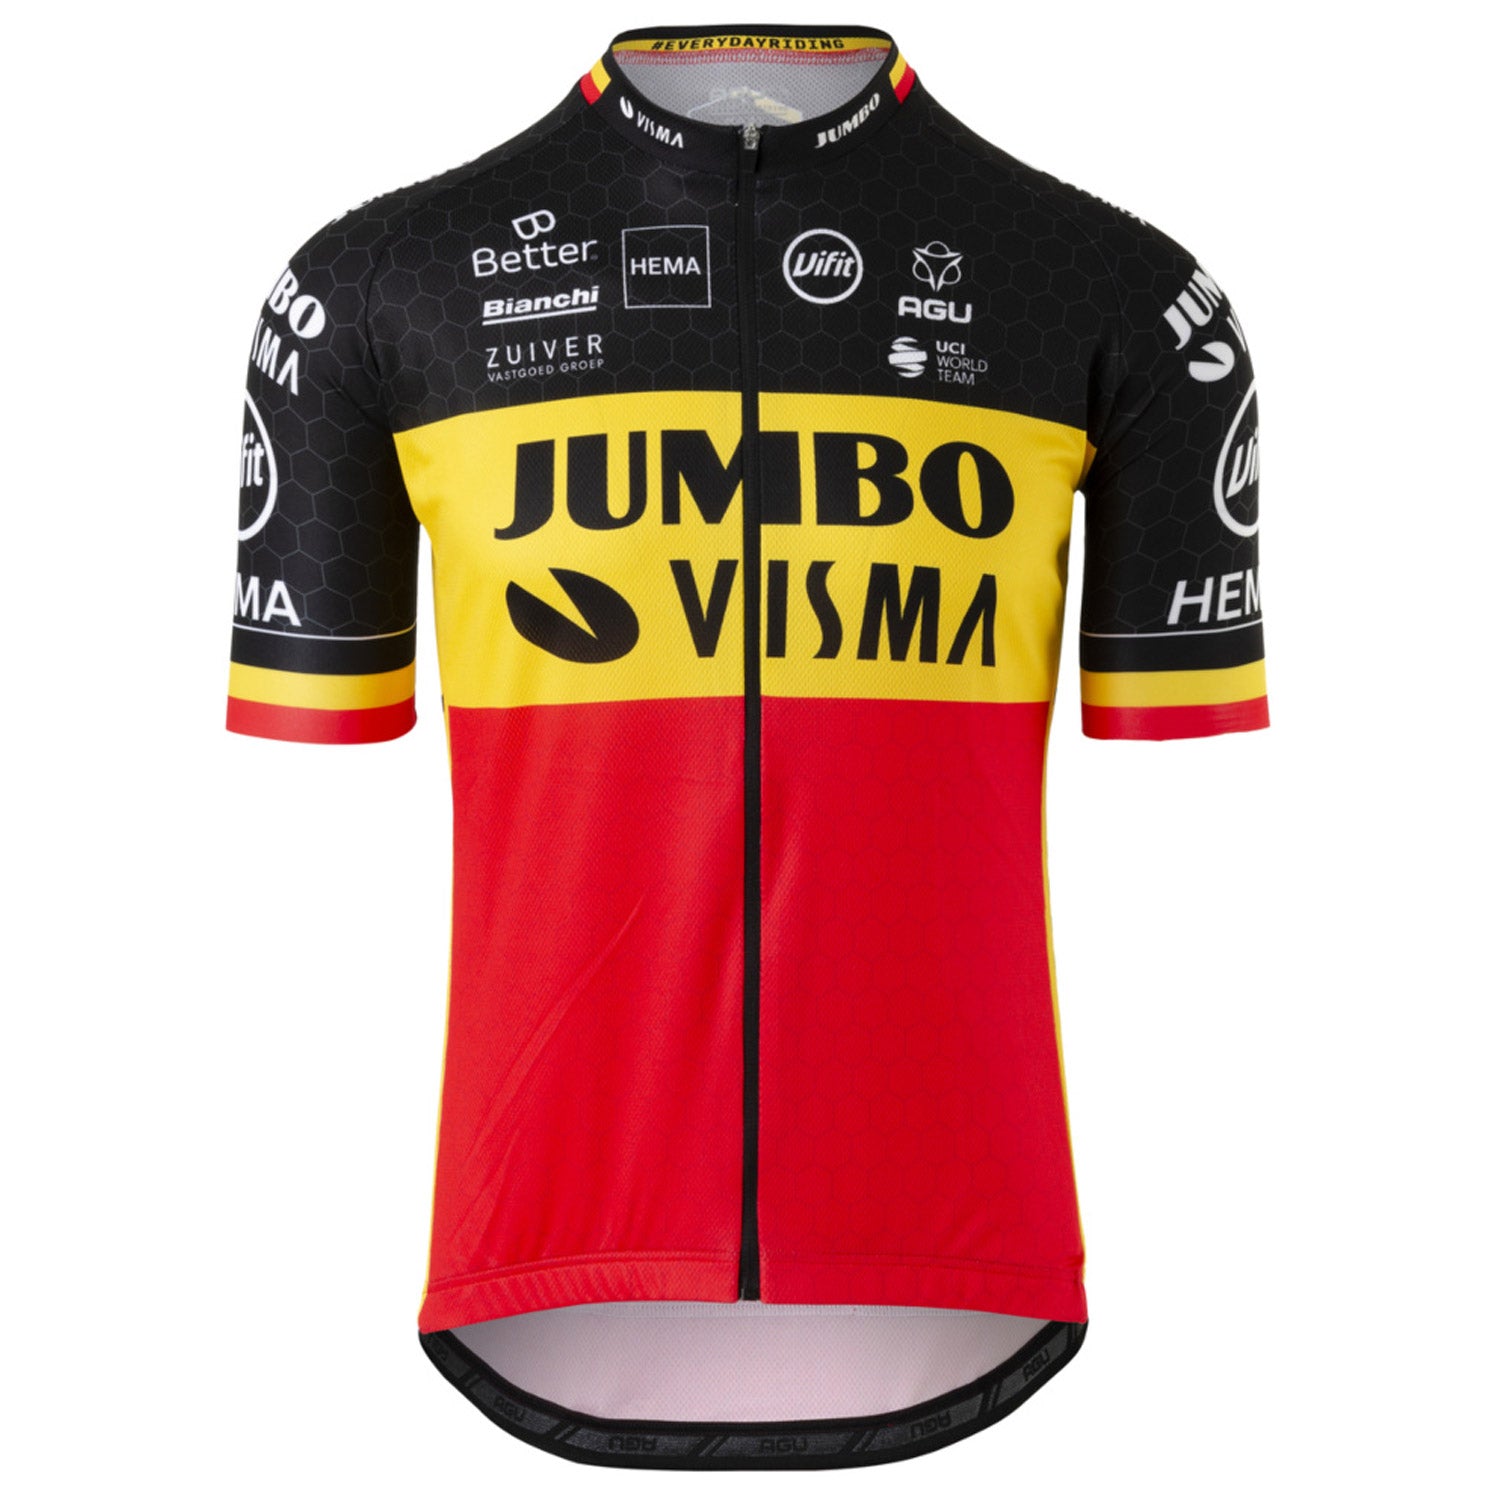 Jumbo Visma 2020 jersey - Belgian champion | All4cycling